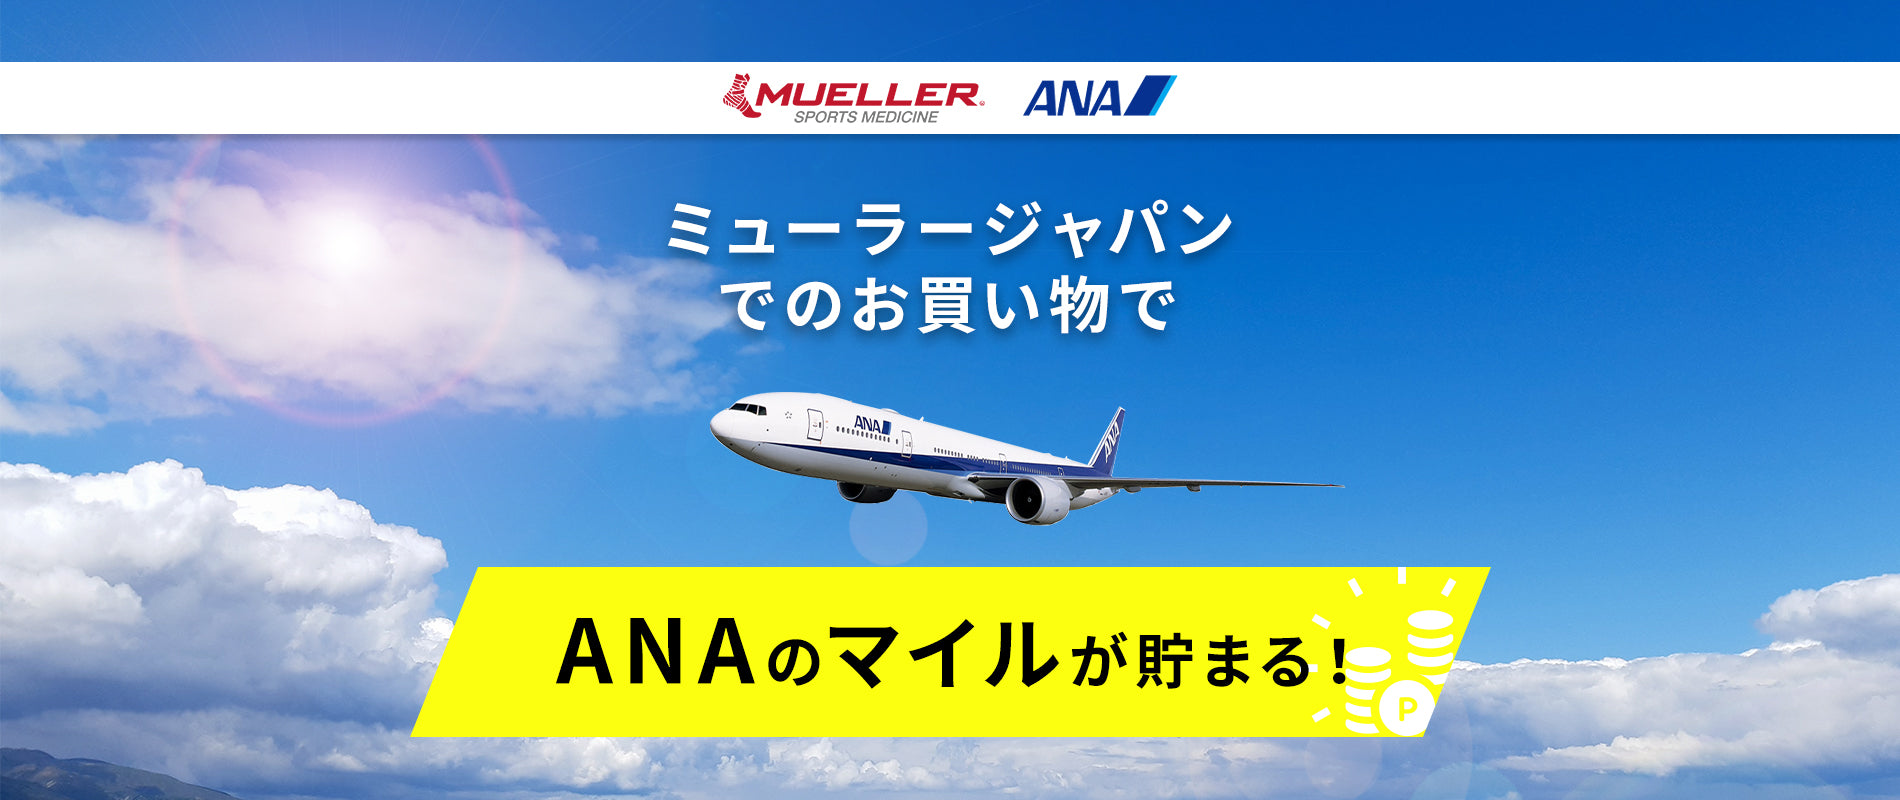 Anaマイレージクラブ提携開始のお知らせ Mueller Japan